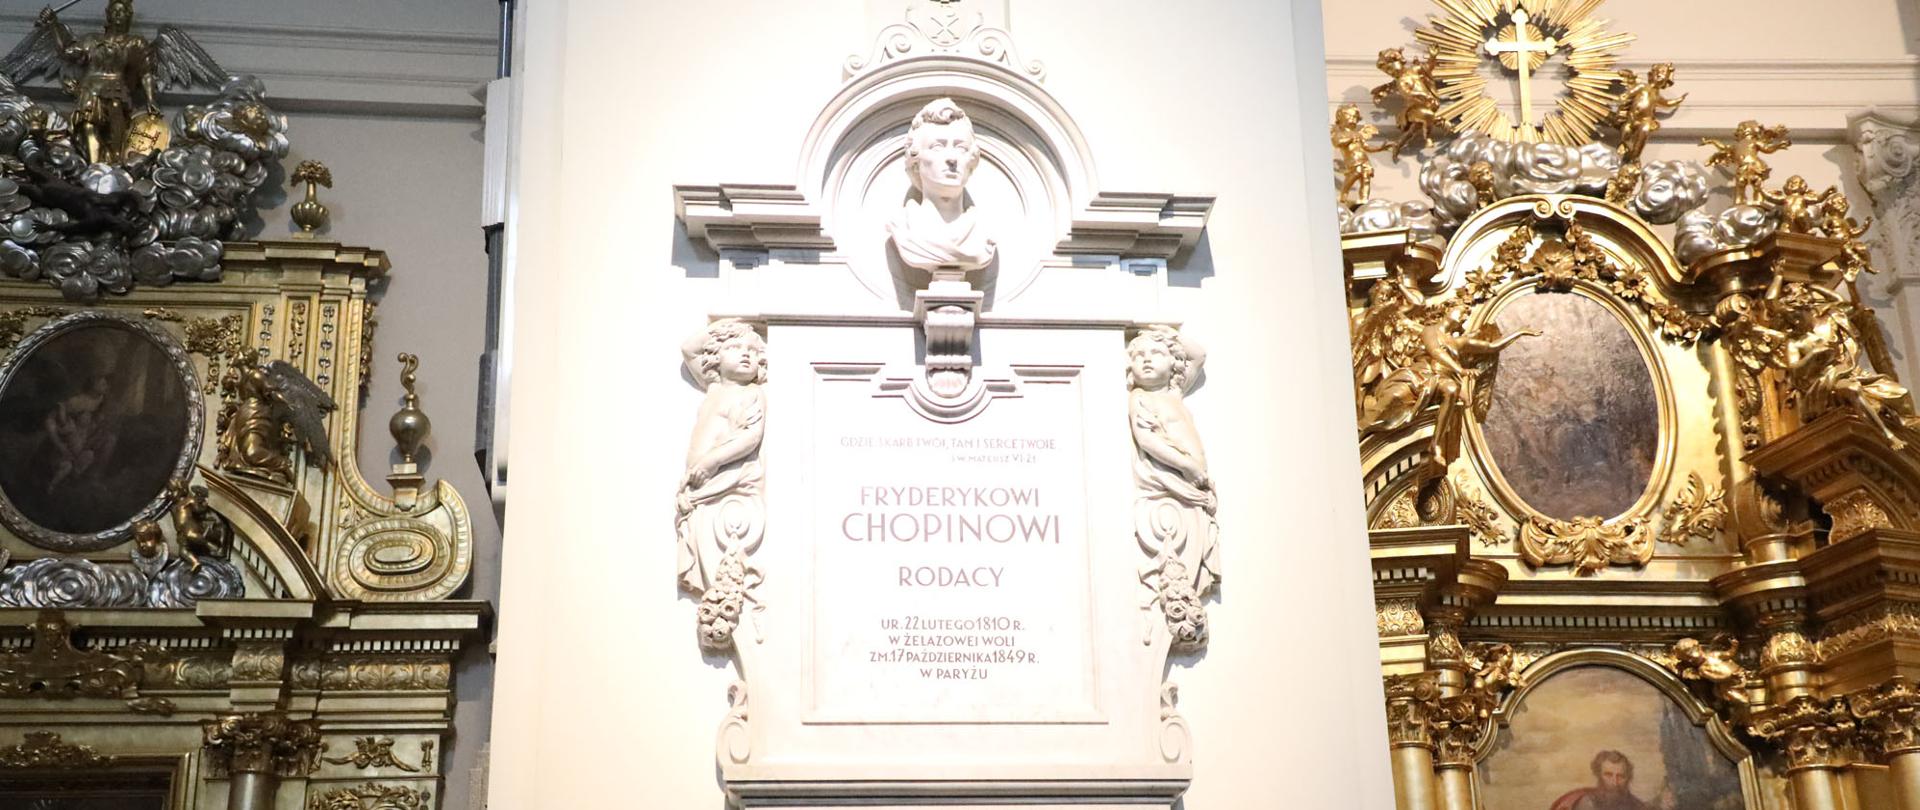 Przedstawiciele Ministerstwa Kultury i Dziedzictwa Narodowego i Sportu oraz Narodowego Instytutu Fryderyka Chopina składają kwiaty pod sercem kompozytora w Bazylice Świętego Krzyża w Warszawie. 